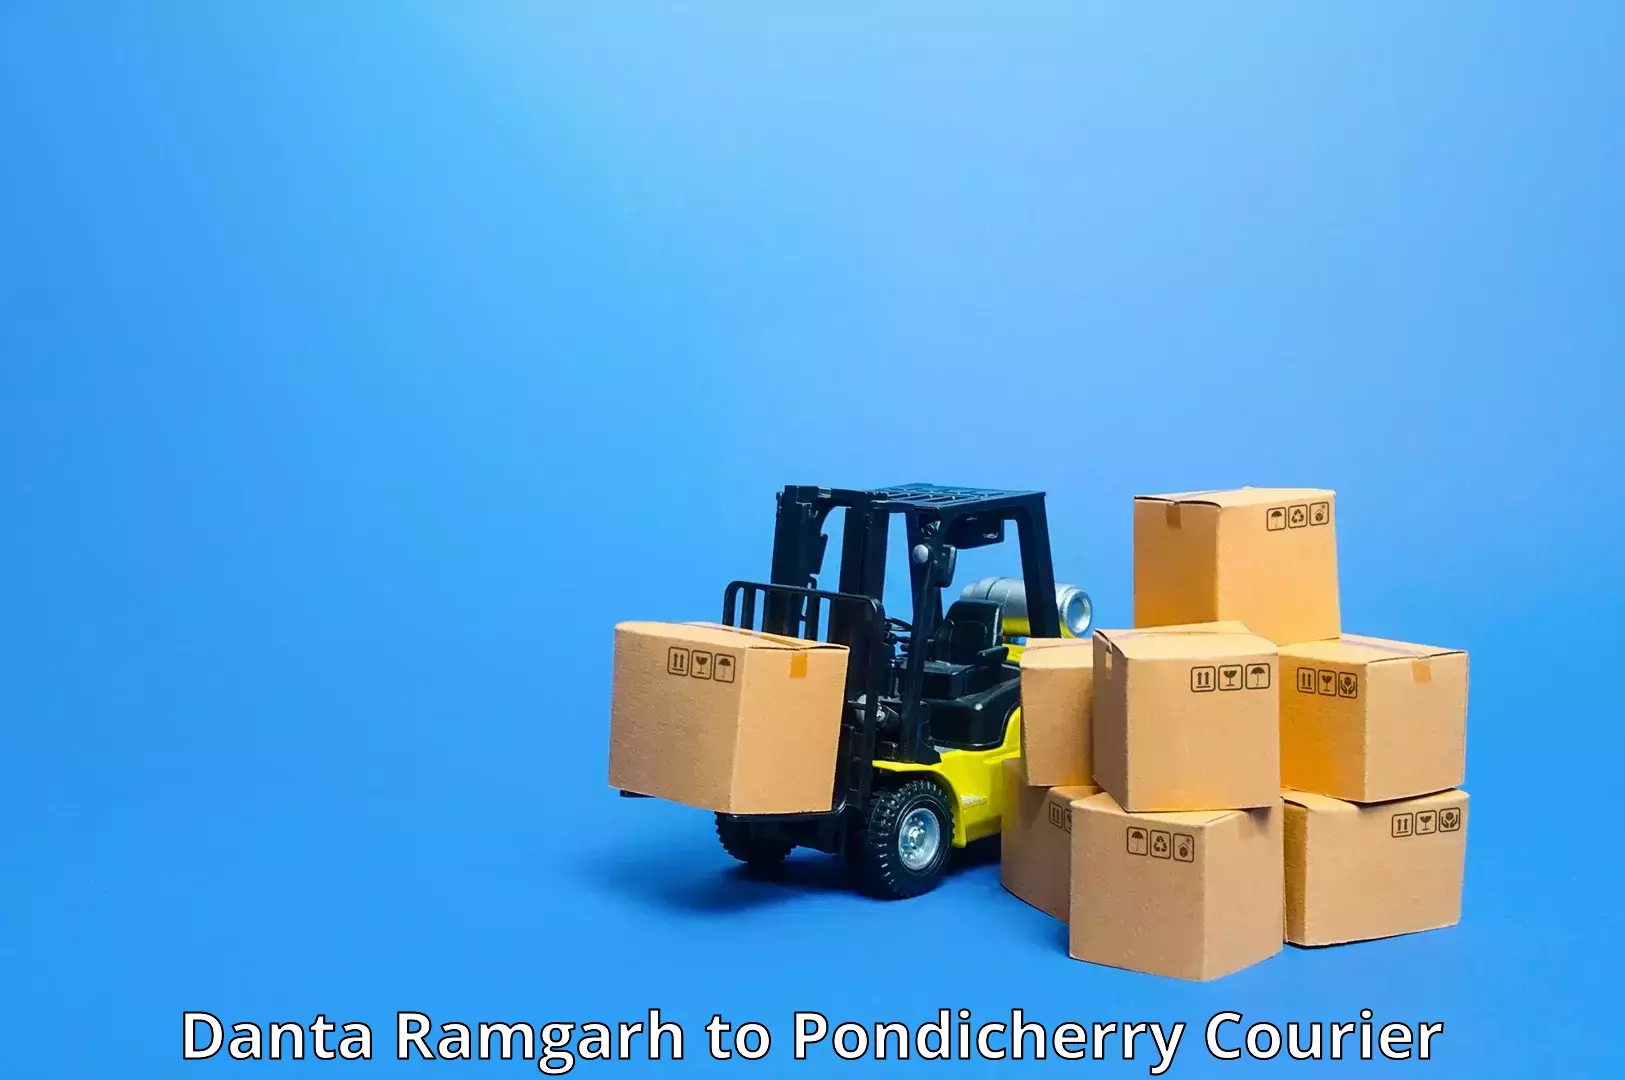 Holiday shipping services Danta Ramgarh to Metttupalayam